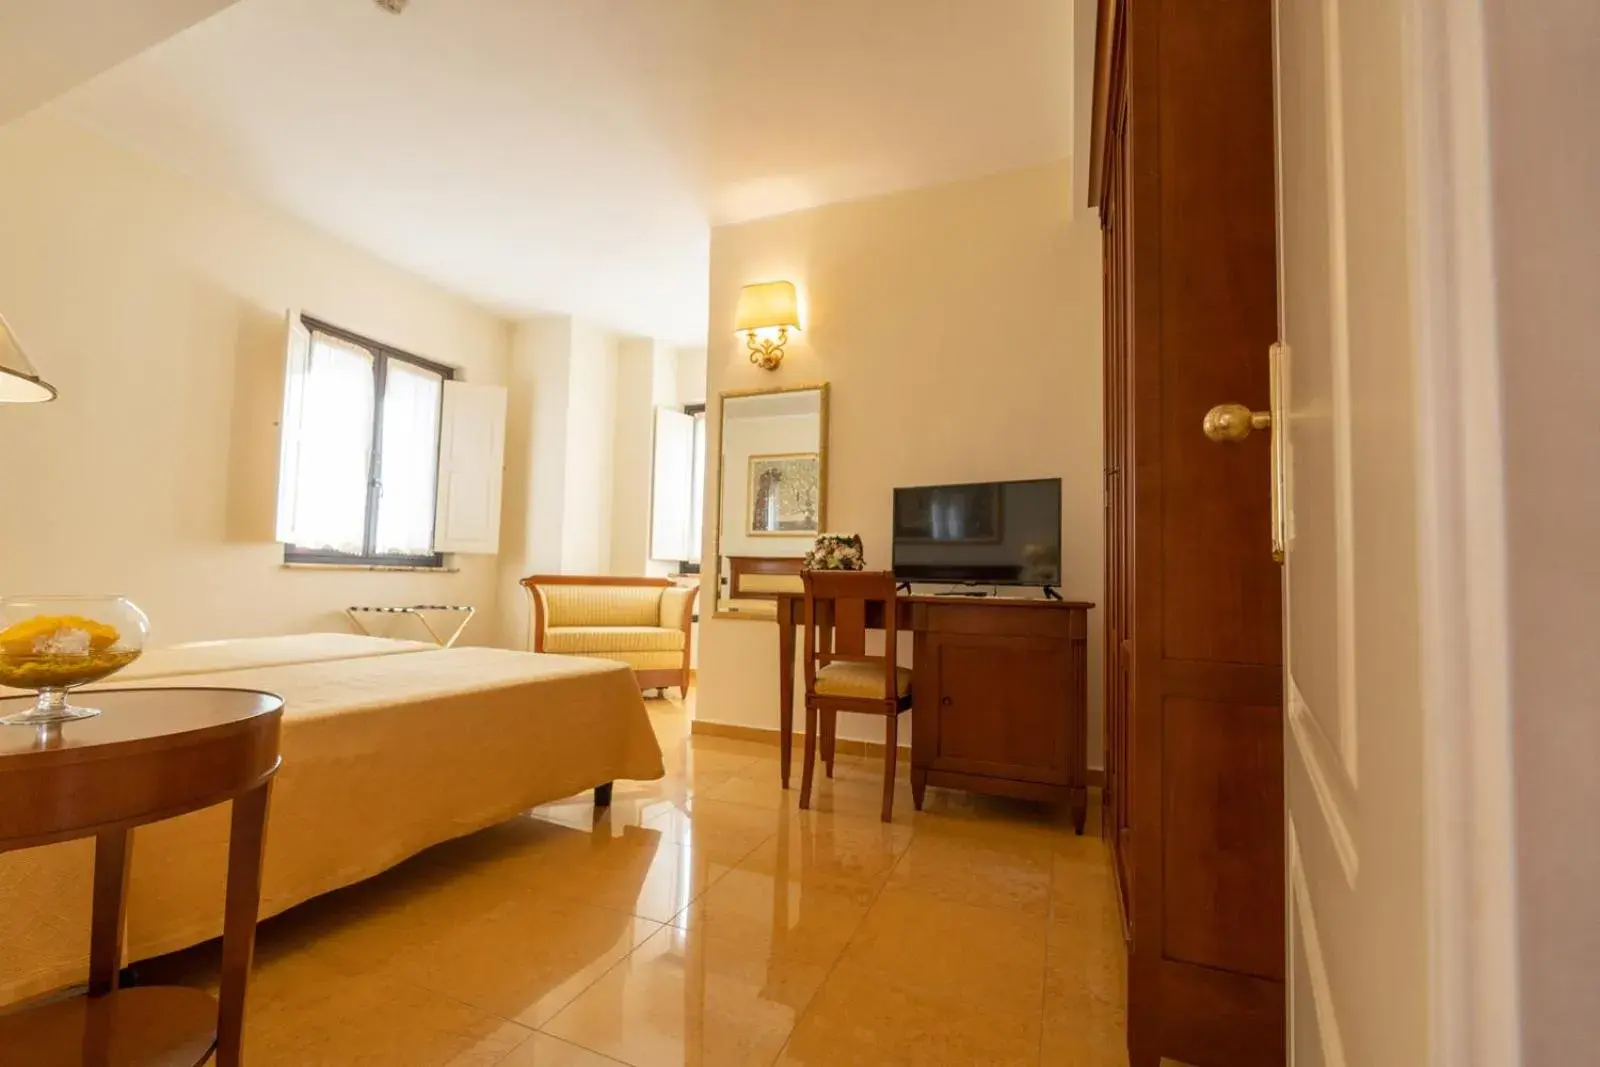 Bedroom, TV/Entertainment Center in Hotel Ristorante Vecchia Vibo